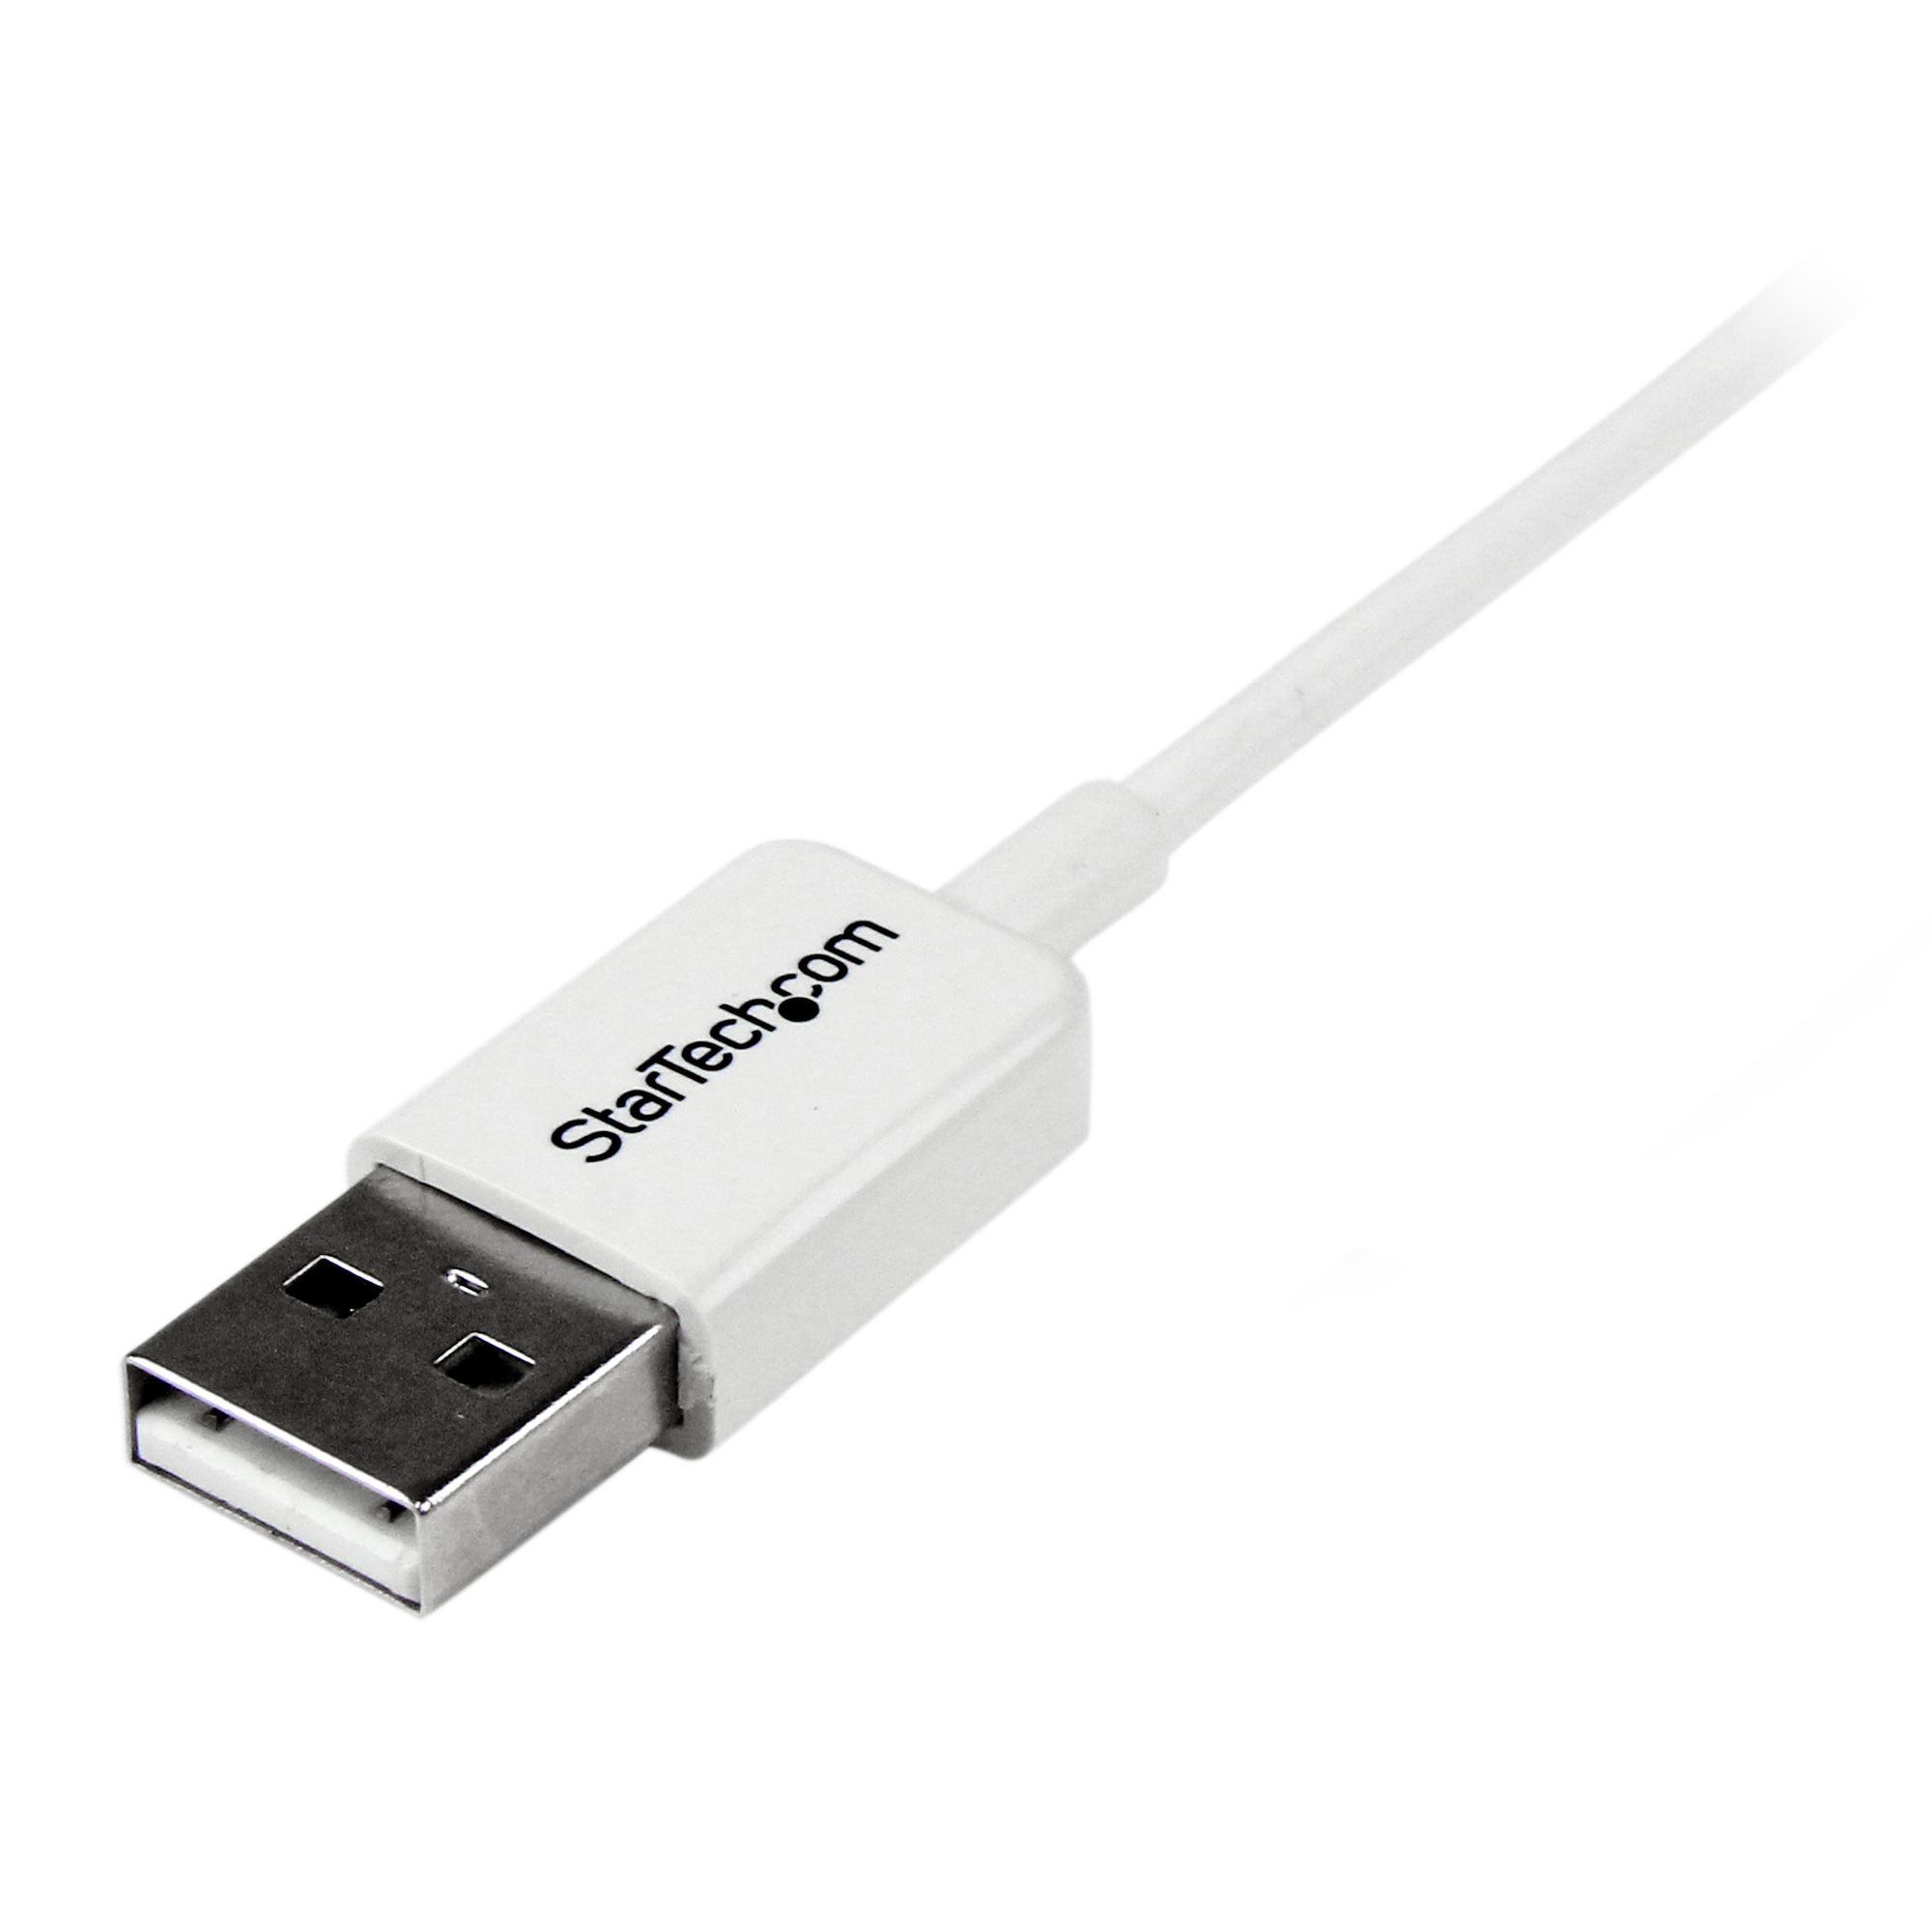 USBマイクロB ケーブル 1m ホワイト Type-A(オス) - Micro-B(オス)